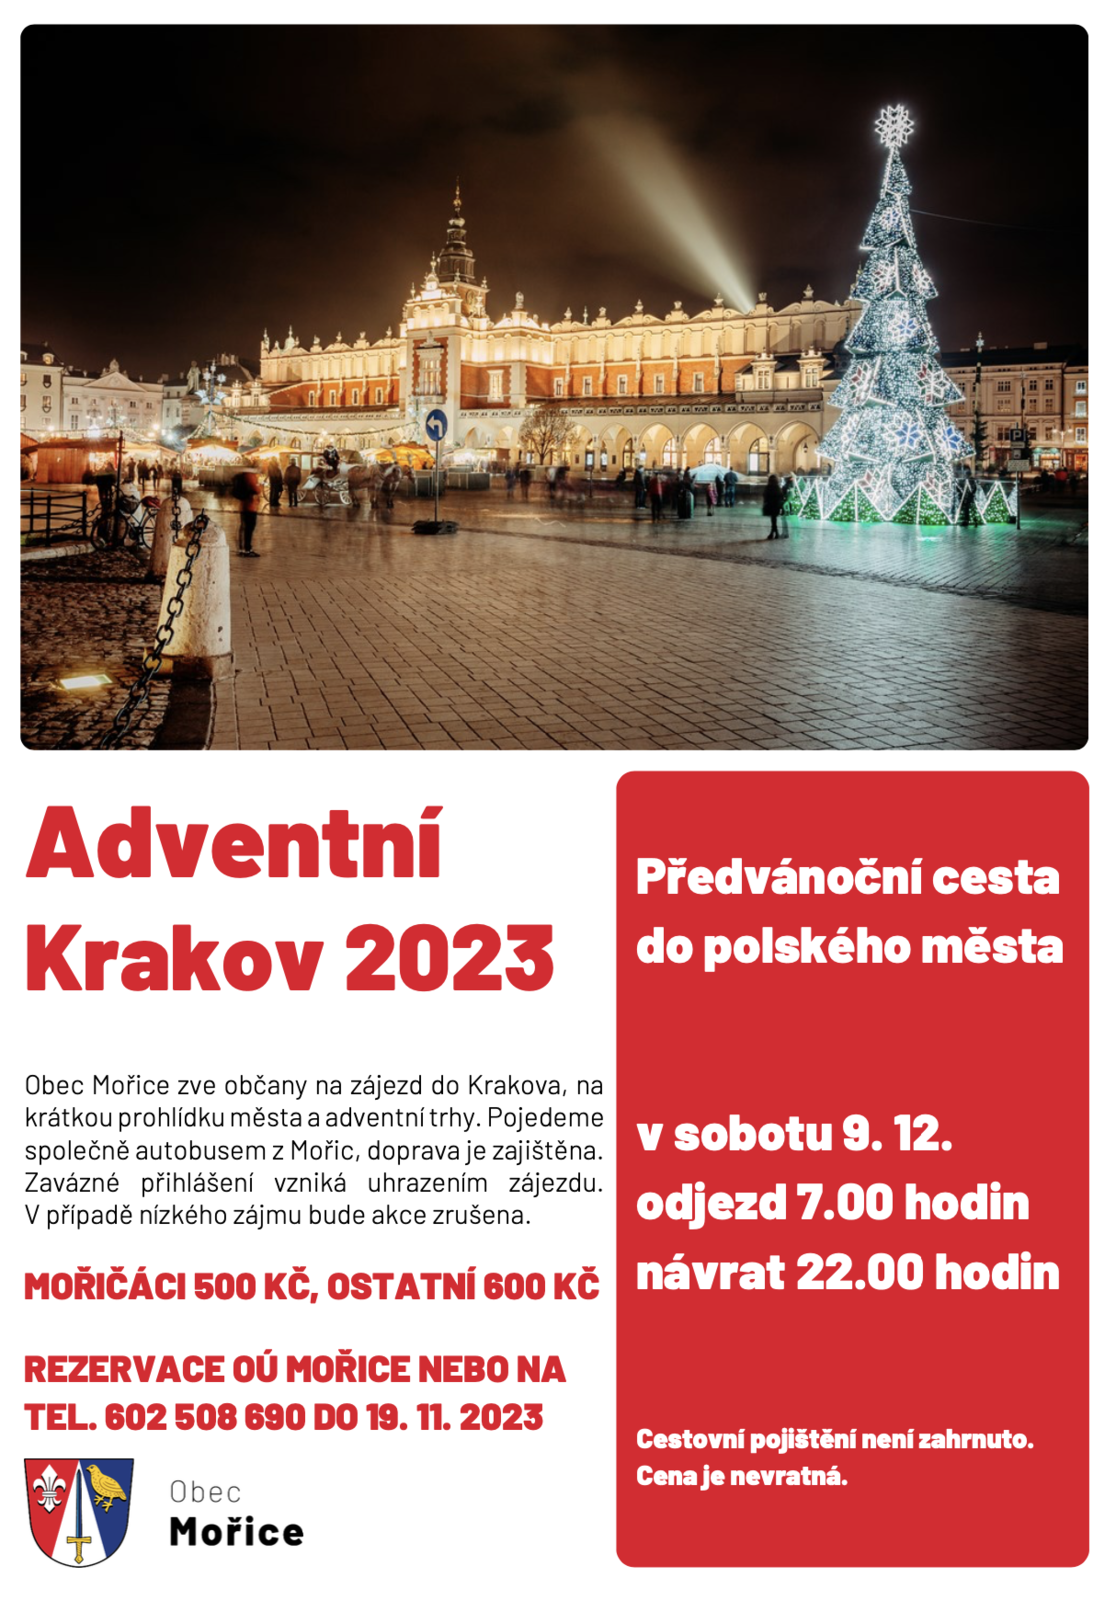 Adventní Krakov 2023